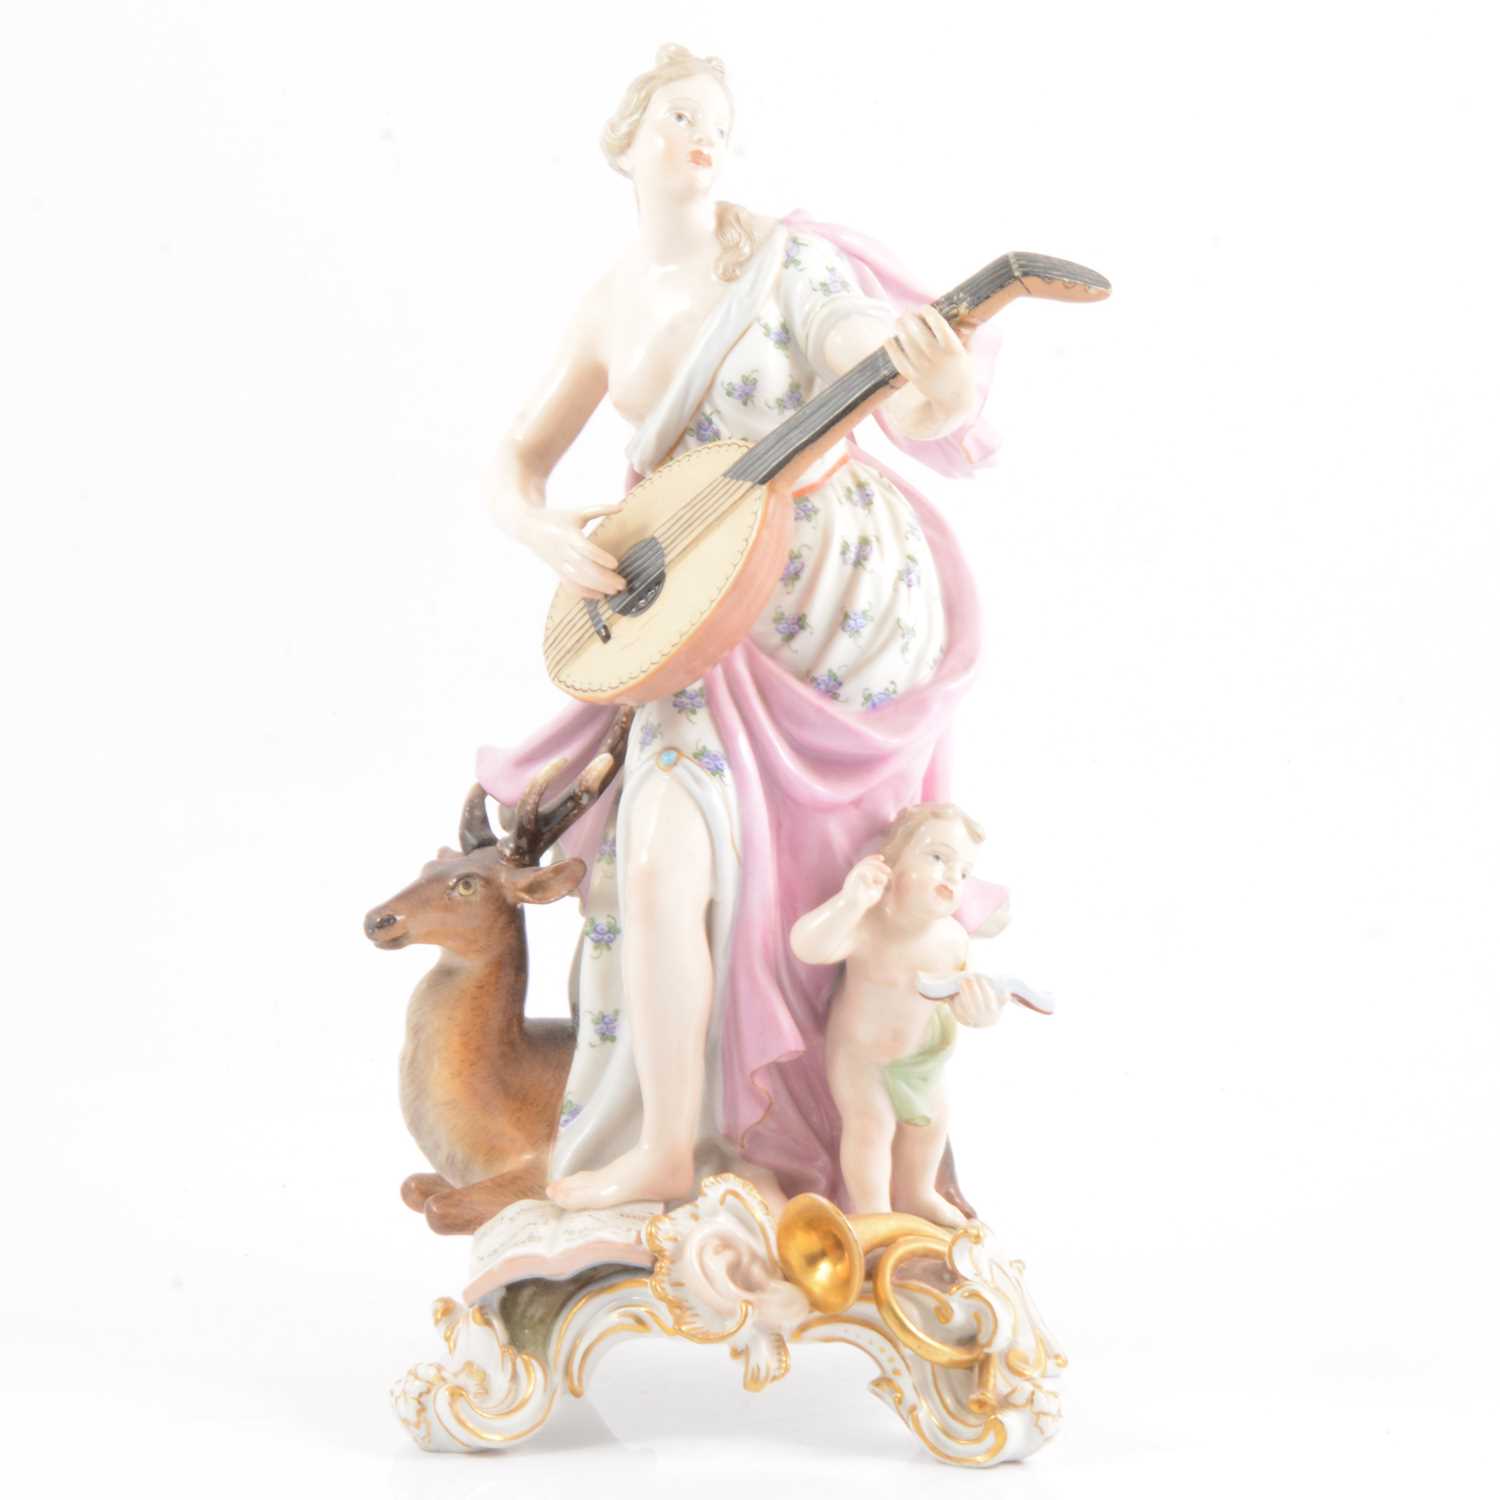 Lot 15 - Meissen porcelain allegorical group, ‘Hearing’ from ‘The Senses’.